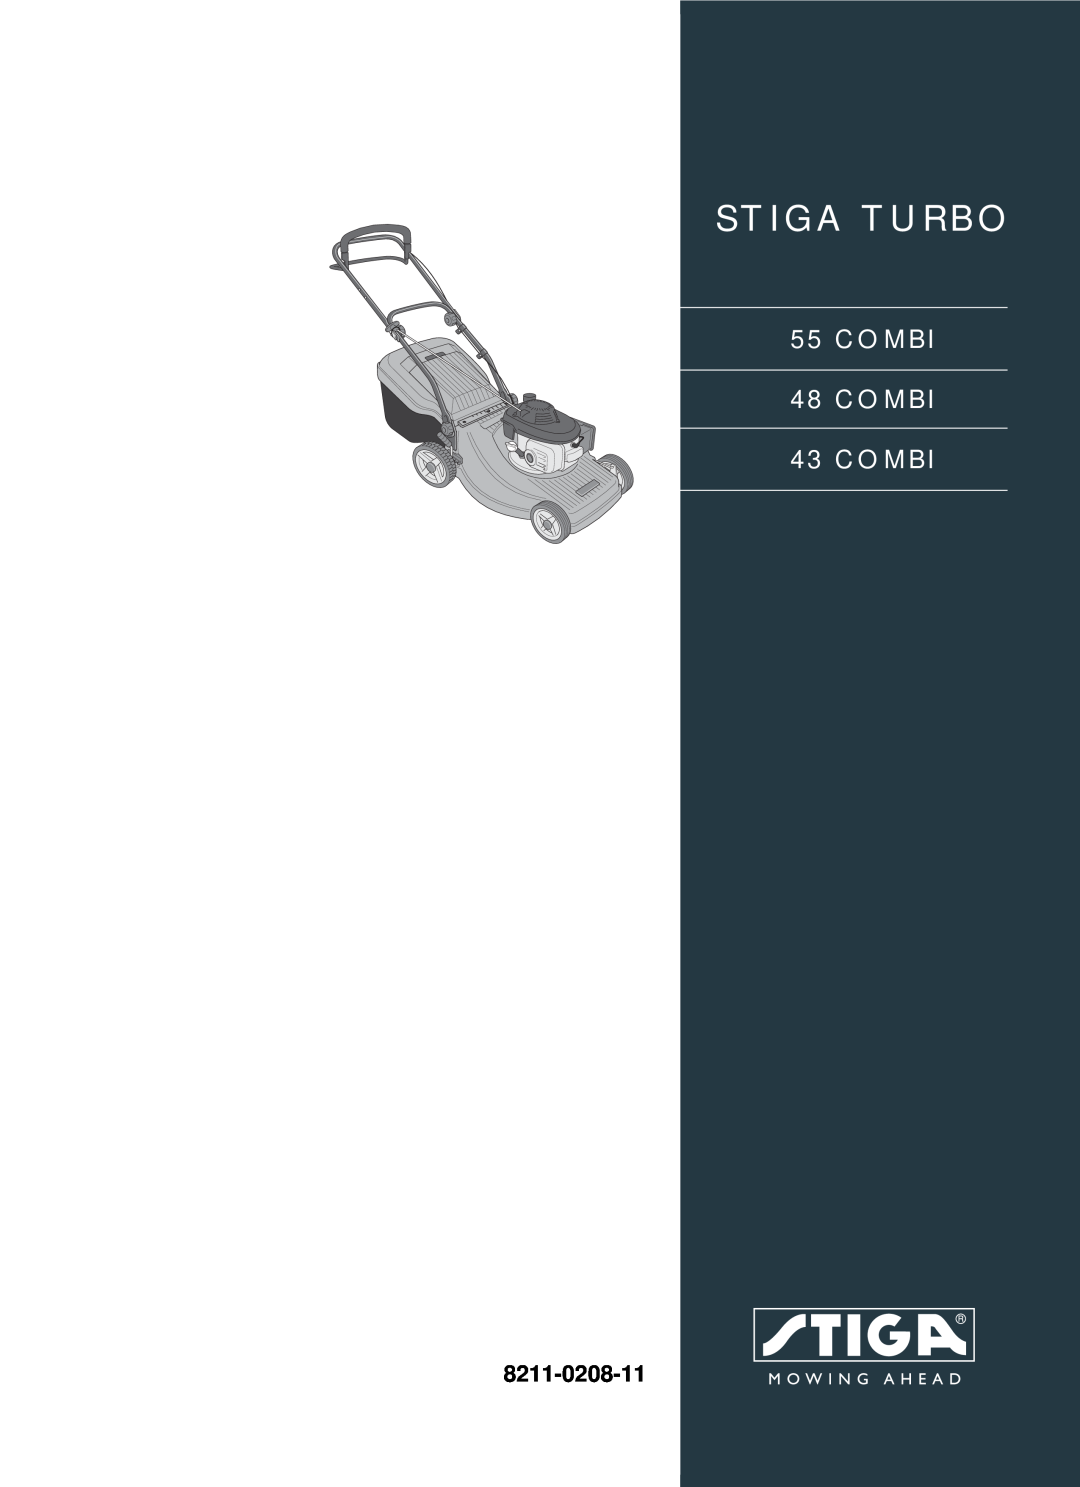 Stiga 55 COMBI manual Stiga Turbo, COMBI 48 COMBI 43 COMBI, 8211-0208-11 